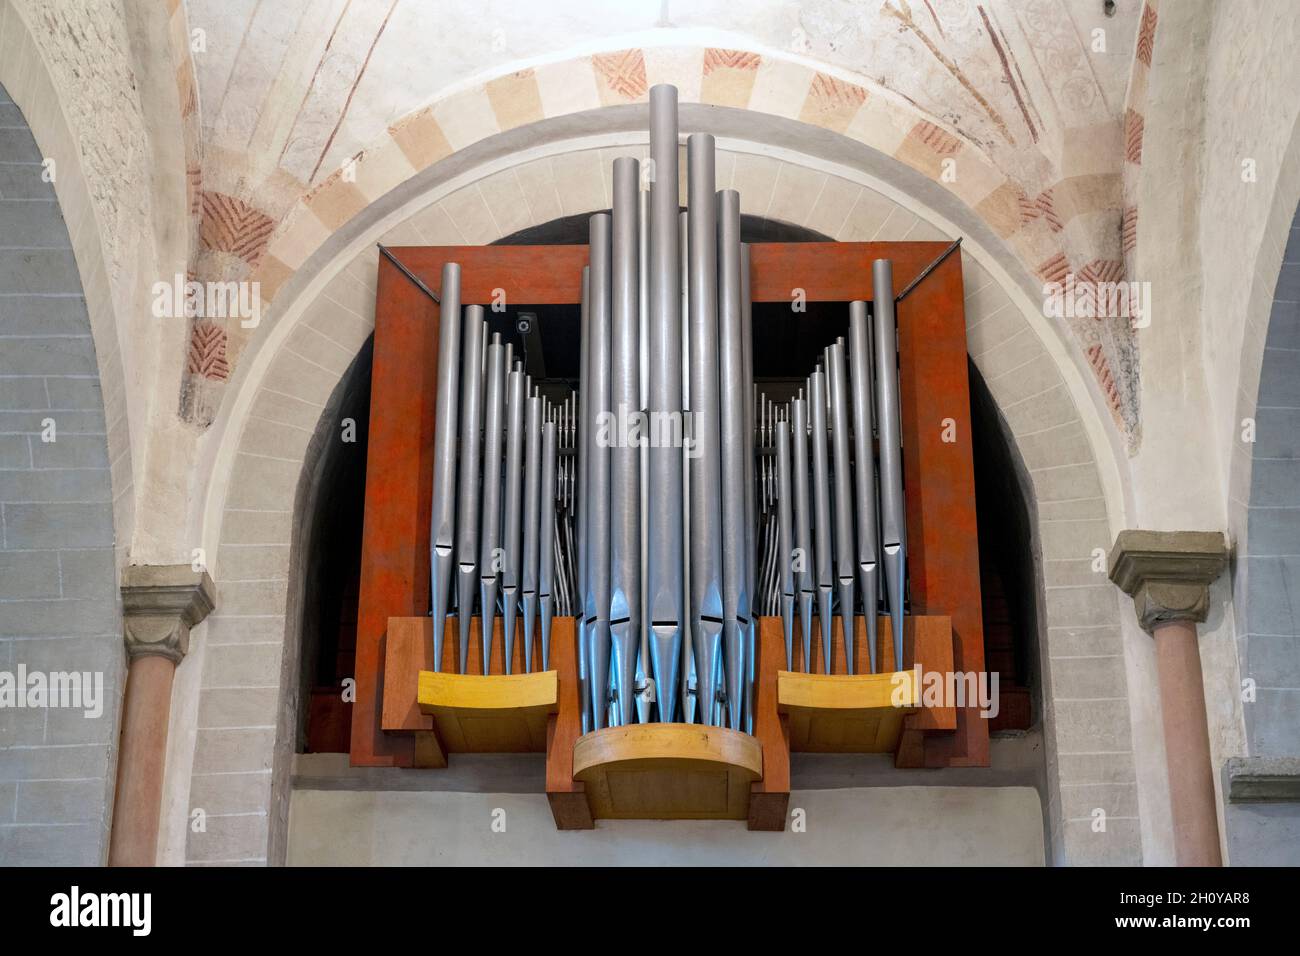 Deutschland, Nordrhein-Westfalen, Bochum-Stiepel, Kirschner-Orgel von 2004 in der Stiepeler Dorfkirche Banque D'Images